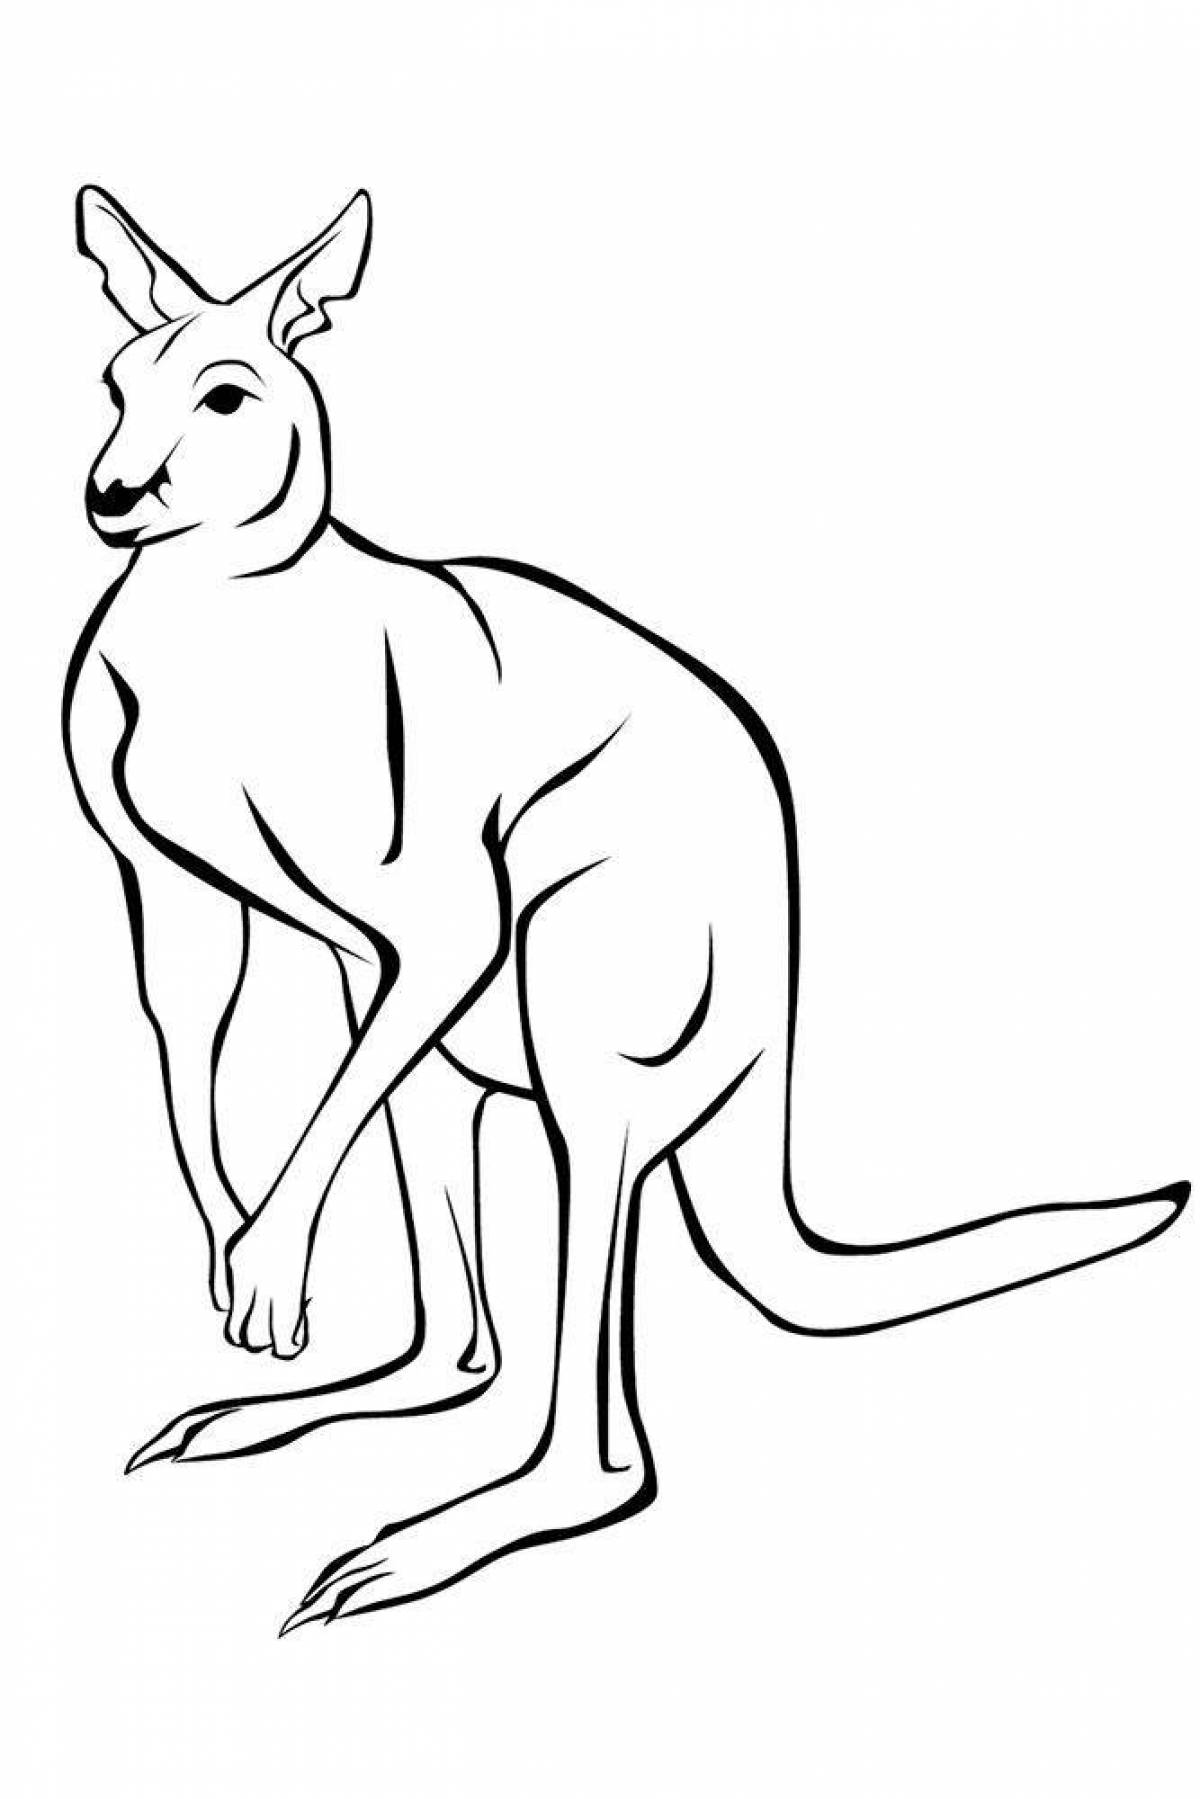 Live coloring kangaroo for kids